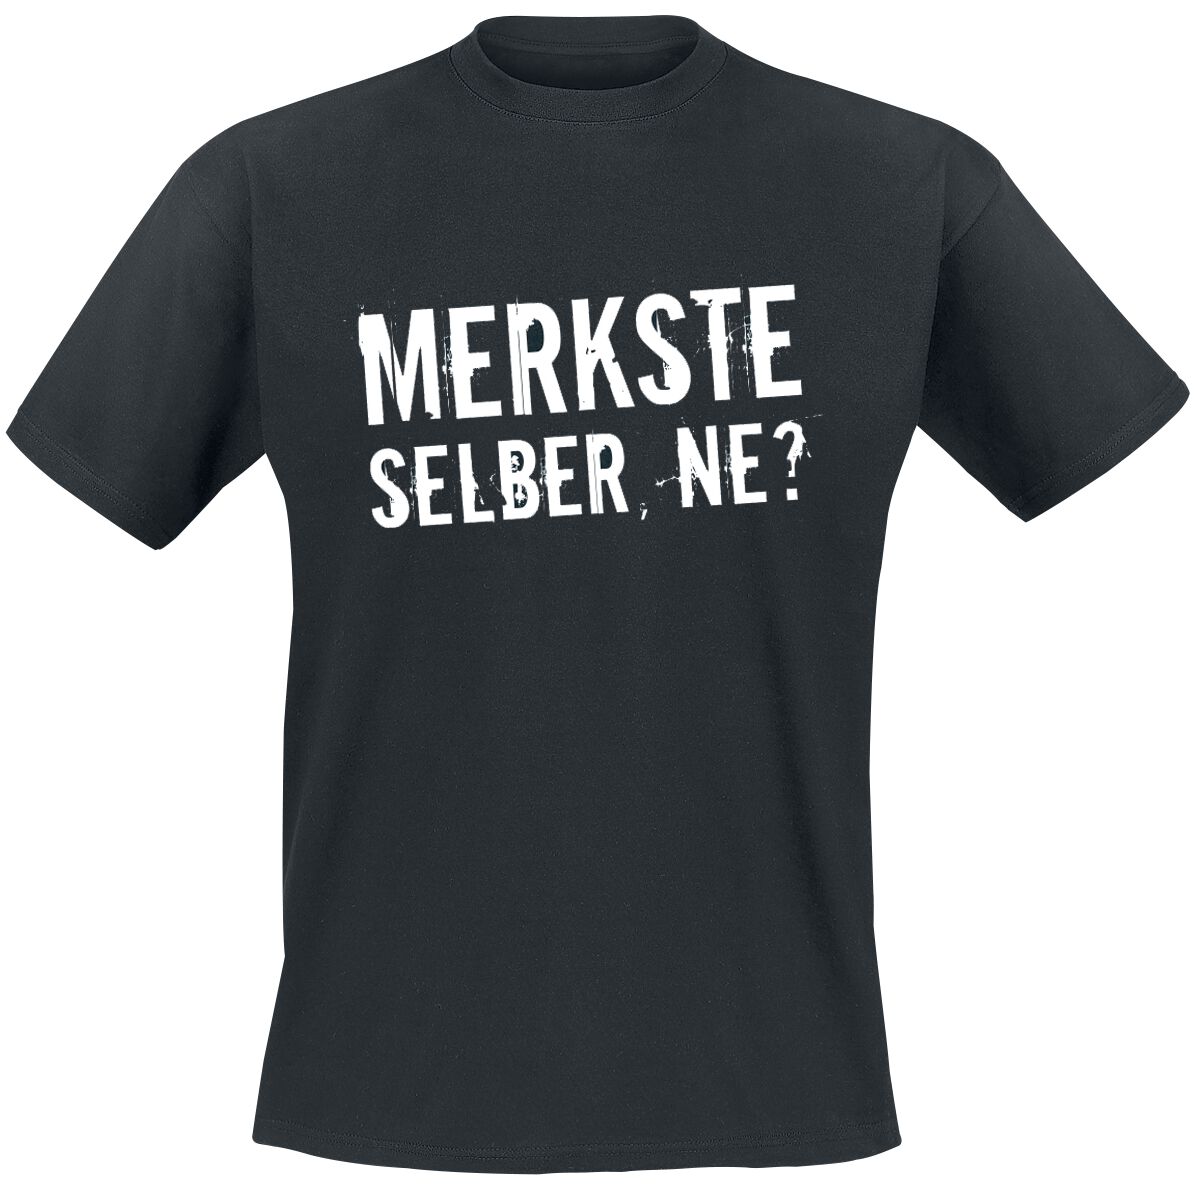 Sprüche T-Shirt - Merkste selber, ne? - XL bis 5XL - für Männer - Größe 5XL - schwarz